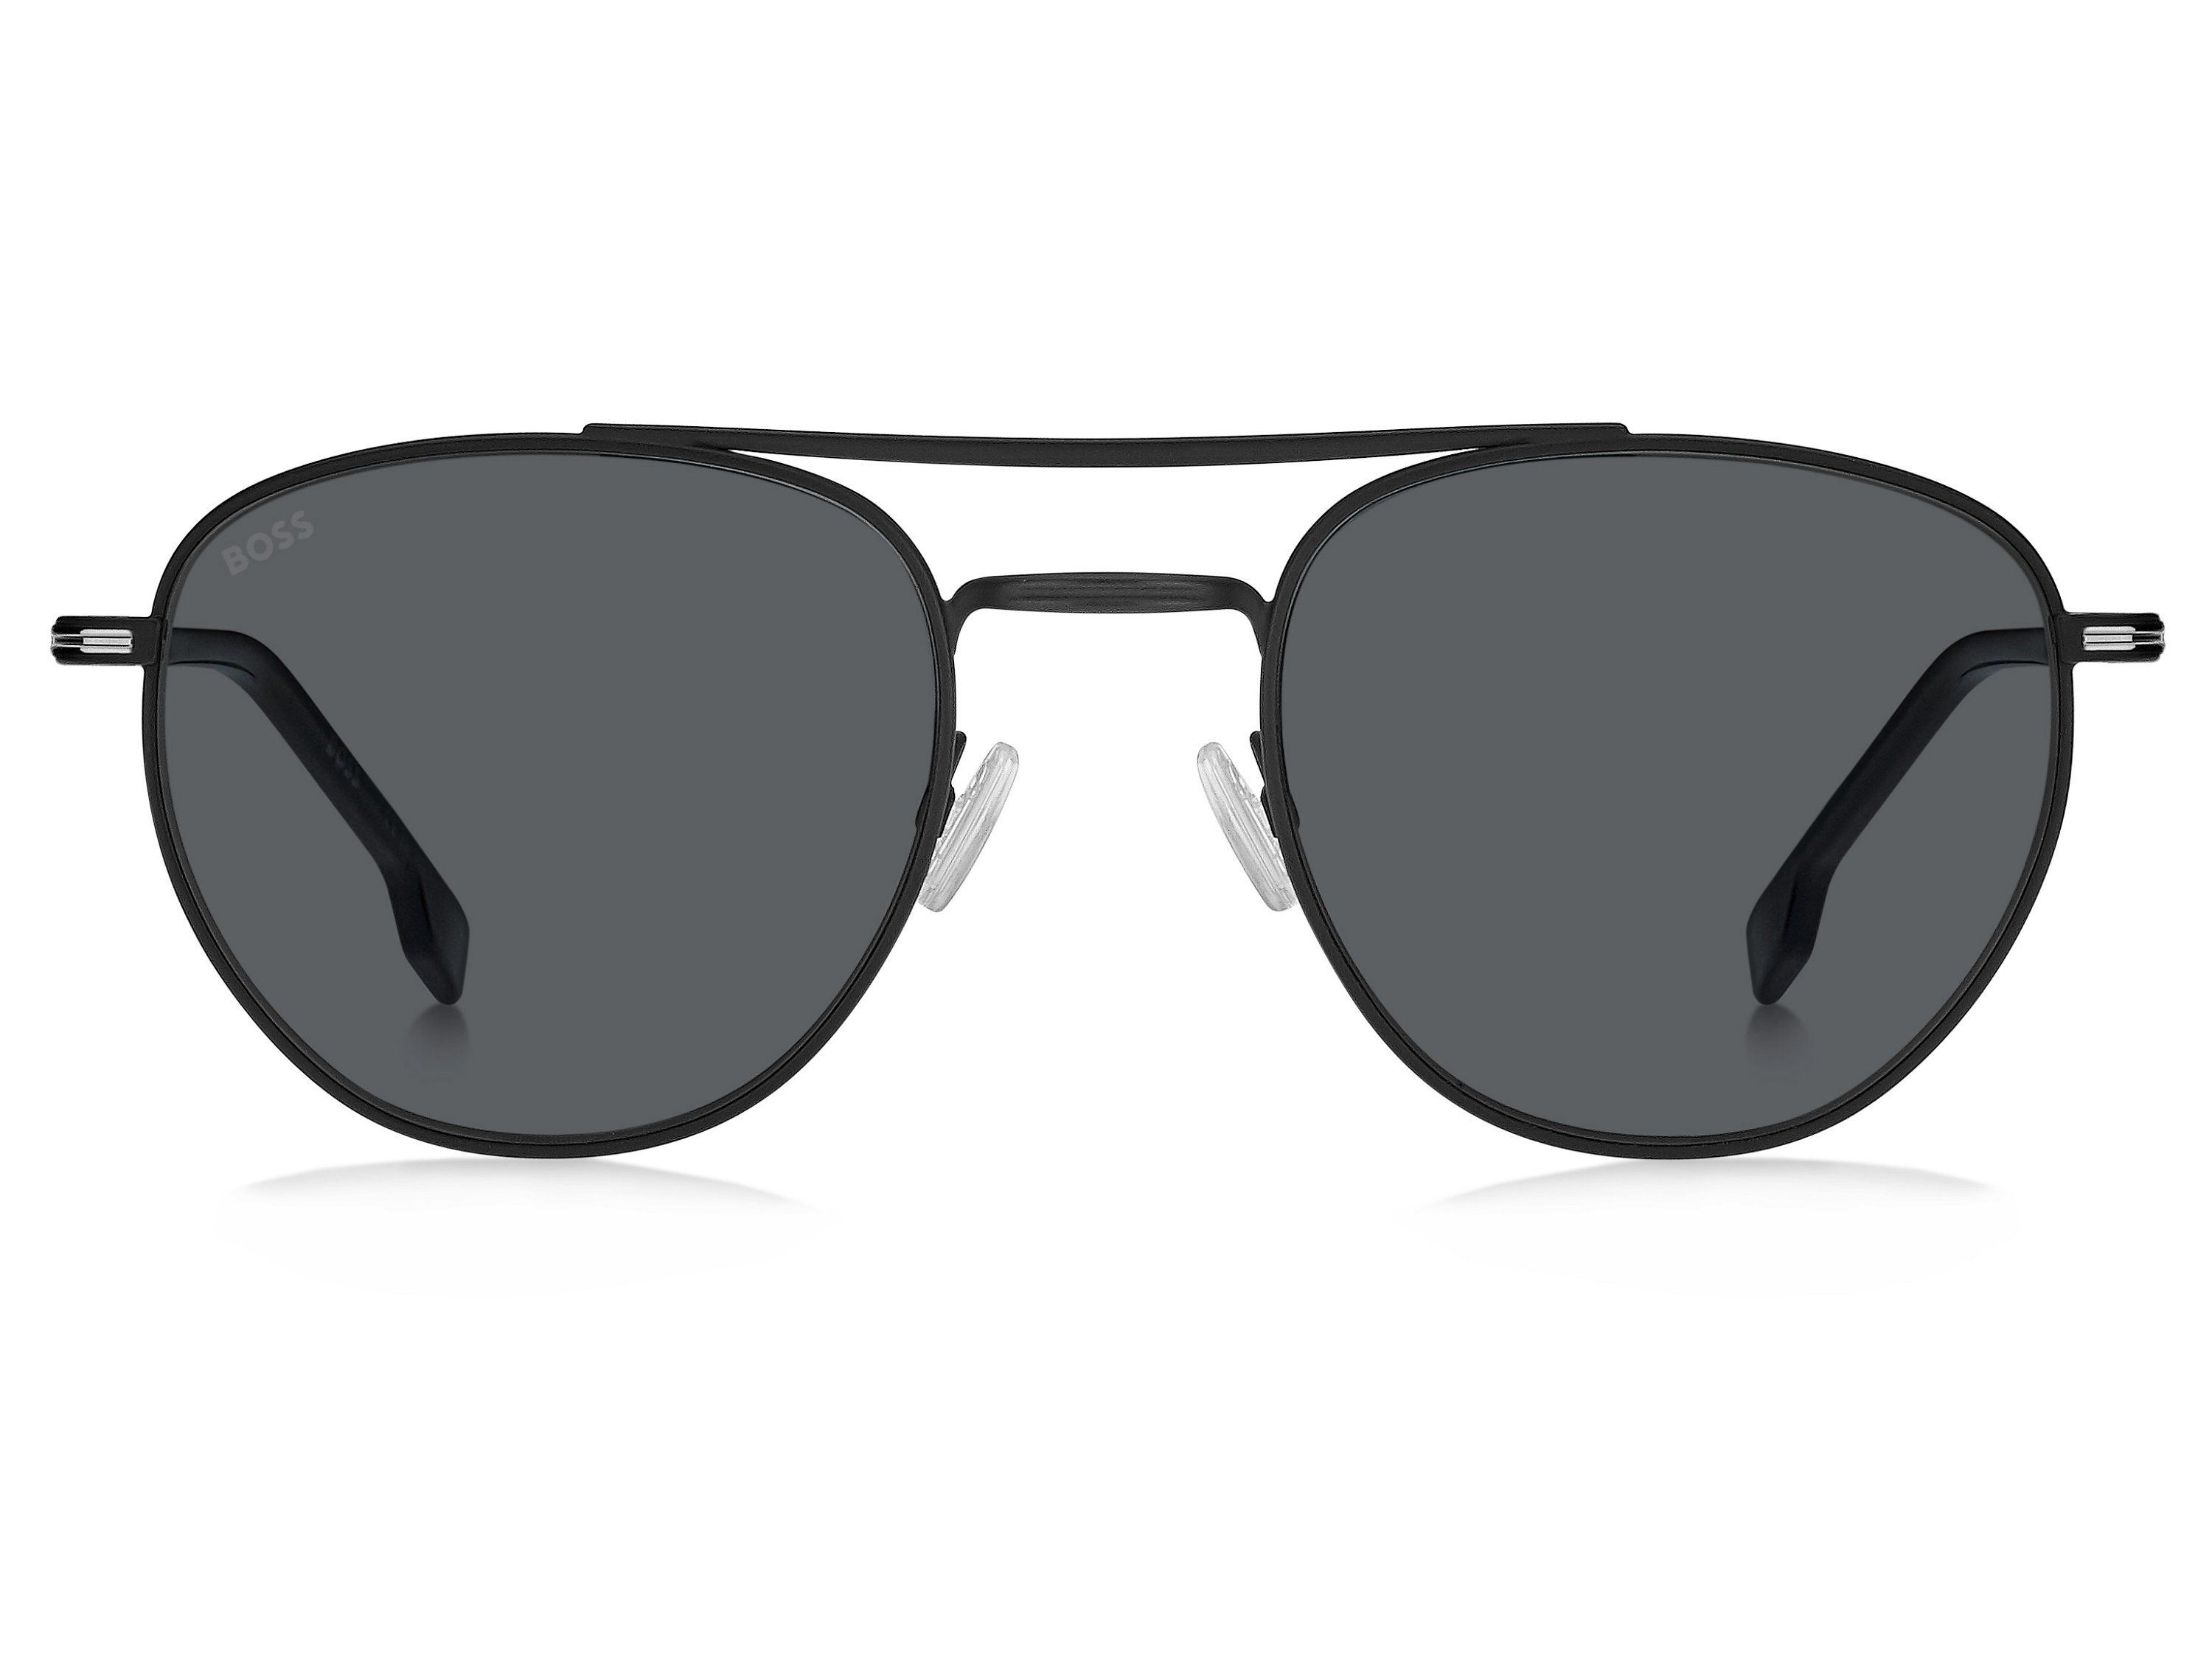 Das Bild zeigt die Sonnenbrille BOSS1631S 003 von der Marke BOSS in Schwarz.